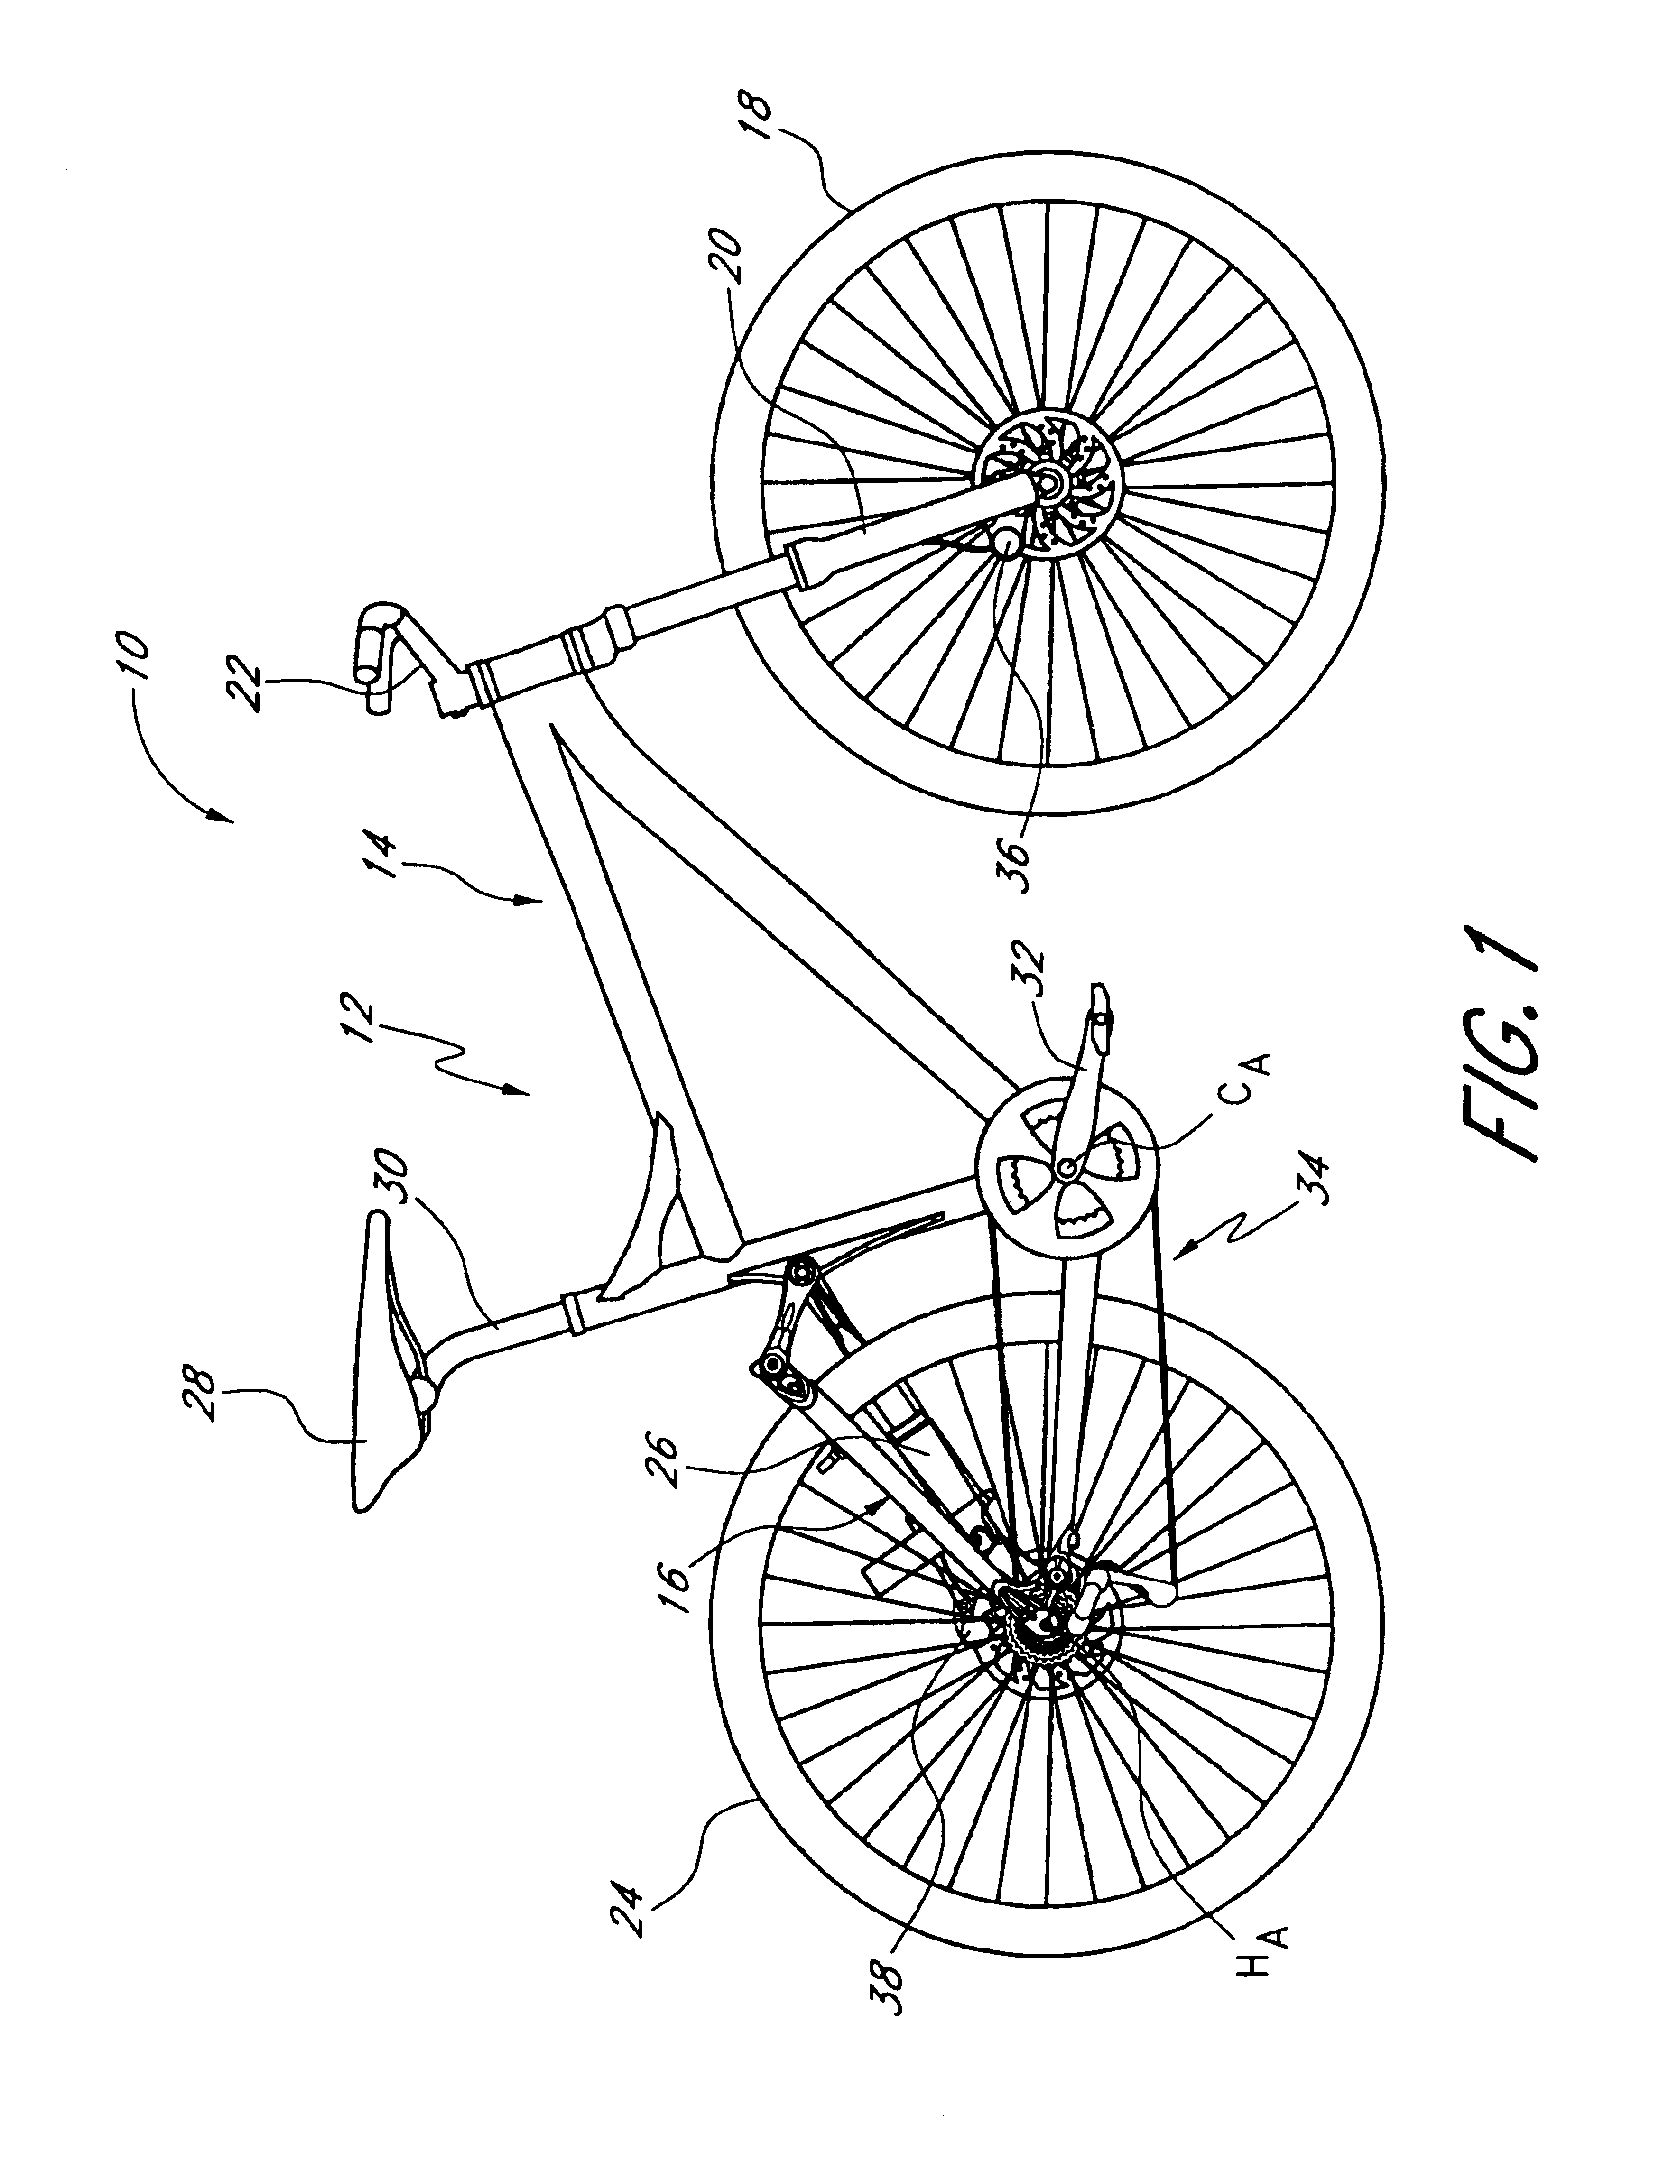 Bicycle rear suspension